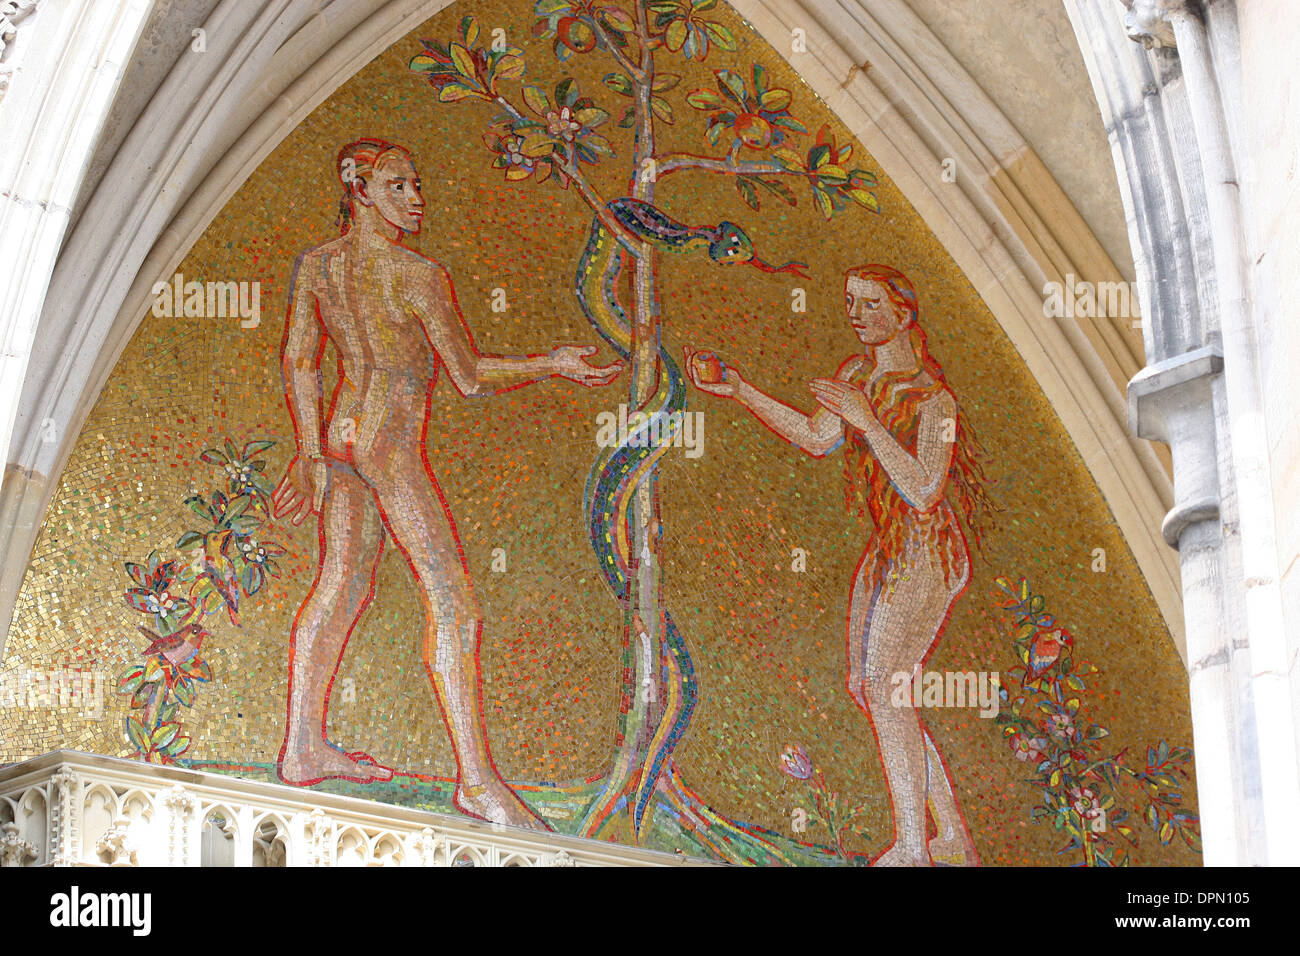 République tchèque. Prague. La cathédrale Saint-Guy. Le Golden Gate. La mosaïque d'Adam et Eve(1372), par Niccoletto Semitecolo. Banque D'Images